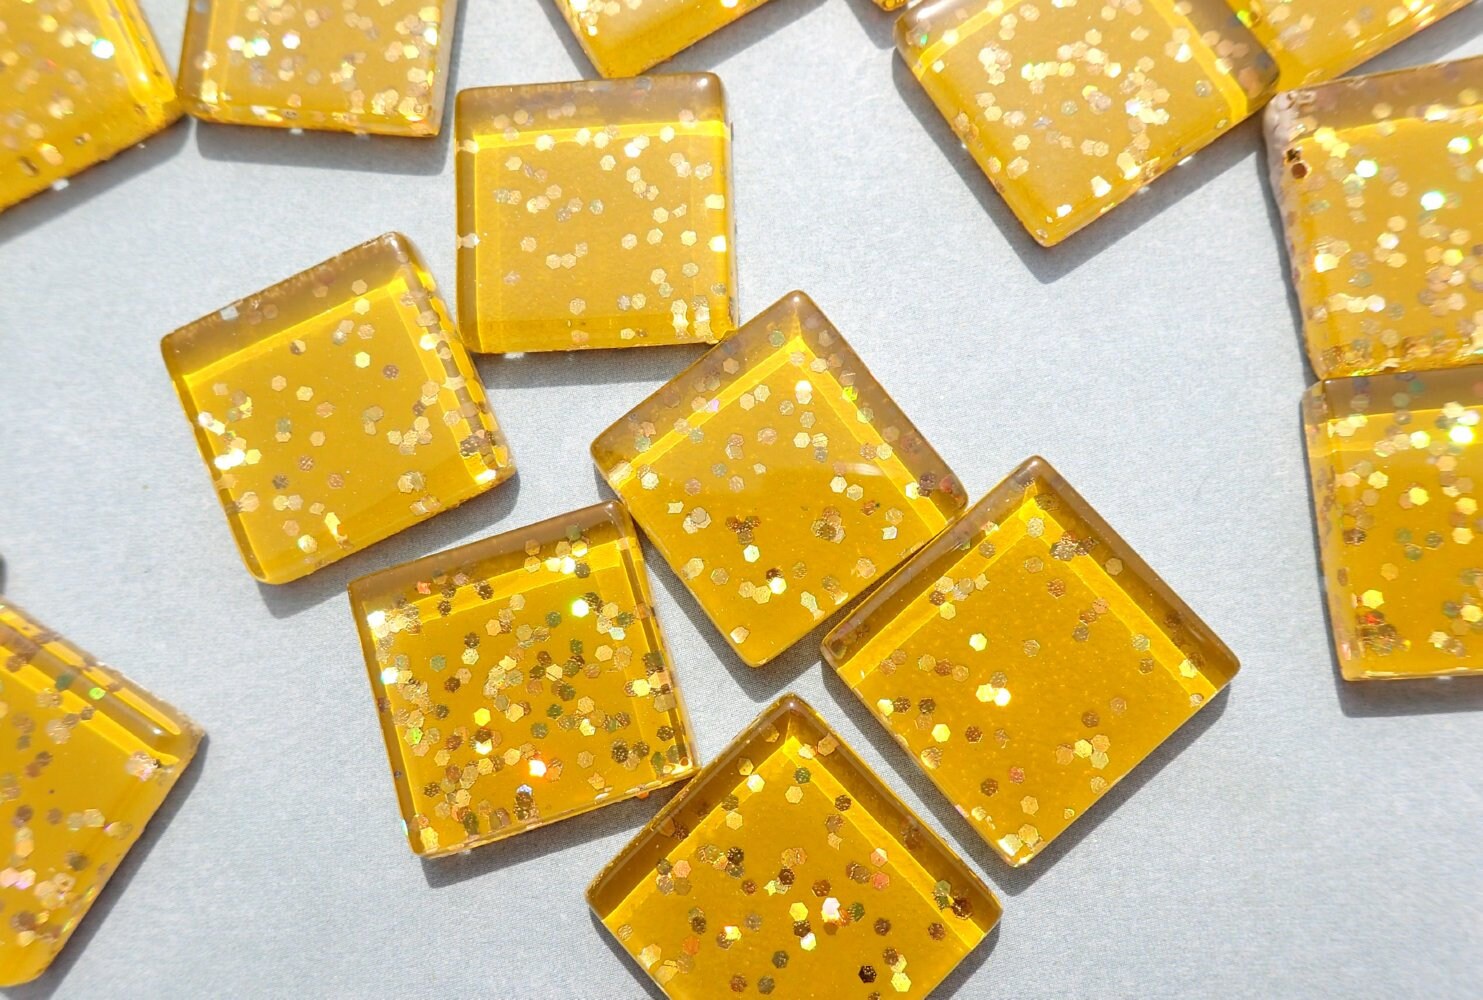 Harvest Gold Glitter Tiles - 20mm Mosaic Tiles - 25 Metallic Glass Tiles with Chunky Gold Glitter